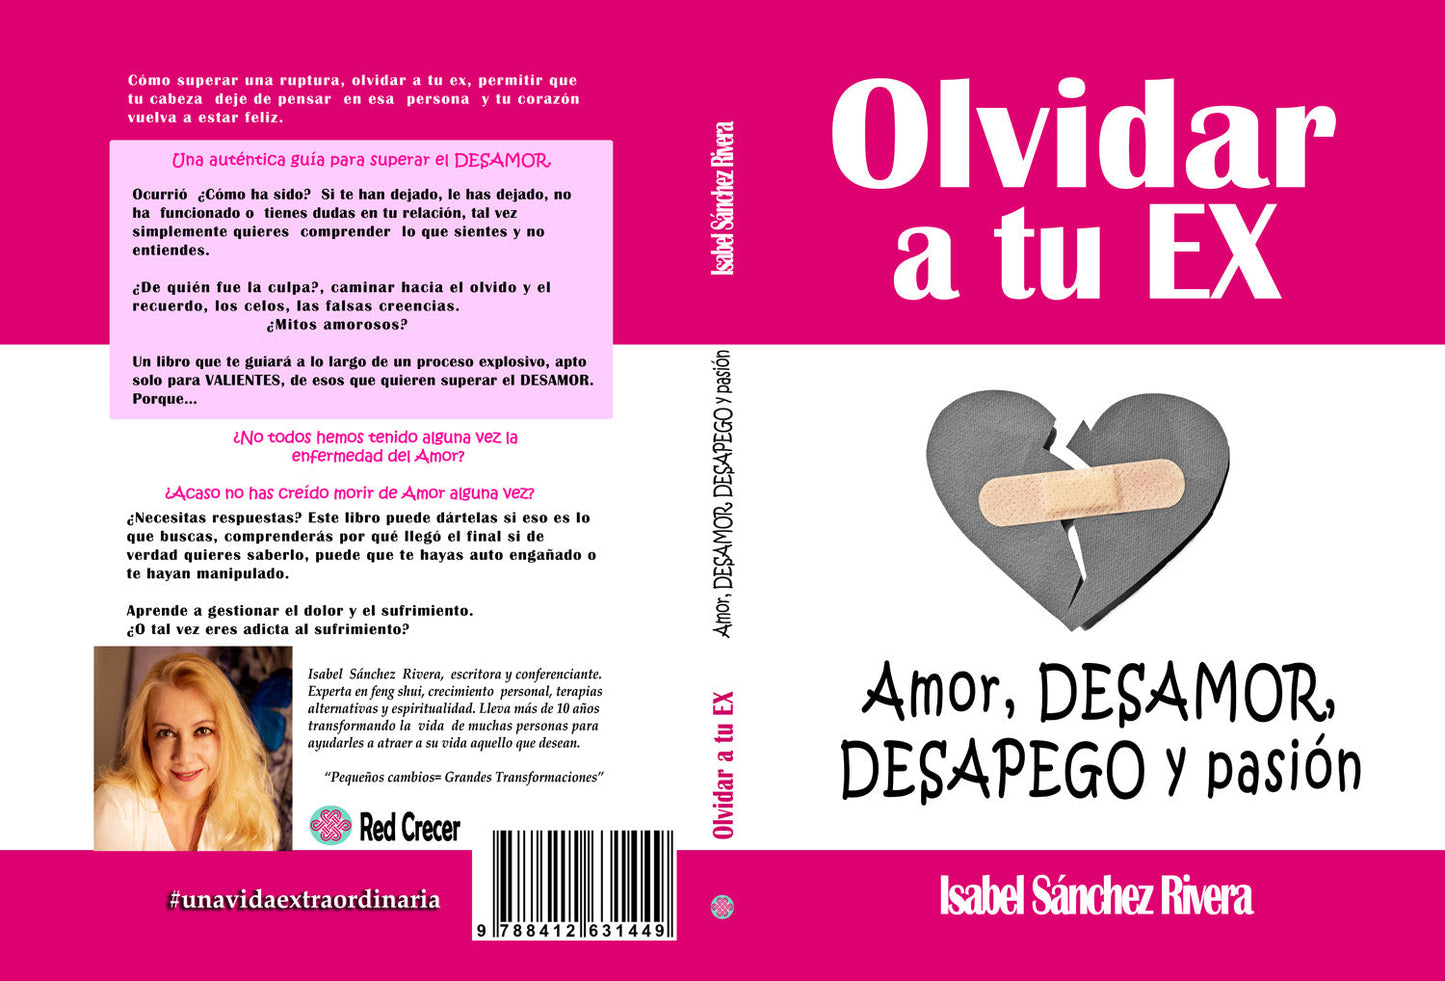 Olvidar a tu Ex. ”Amor, desamor, Desapego y pasión” en PDF. Ebook versión DIGITAL